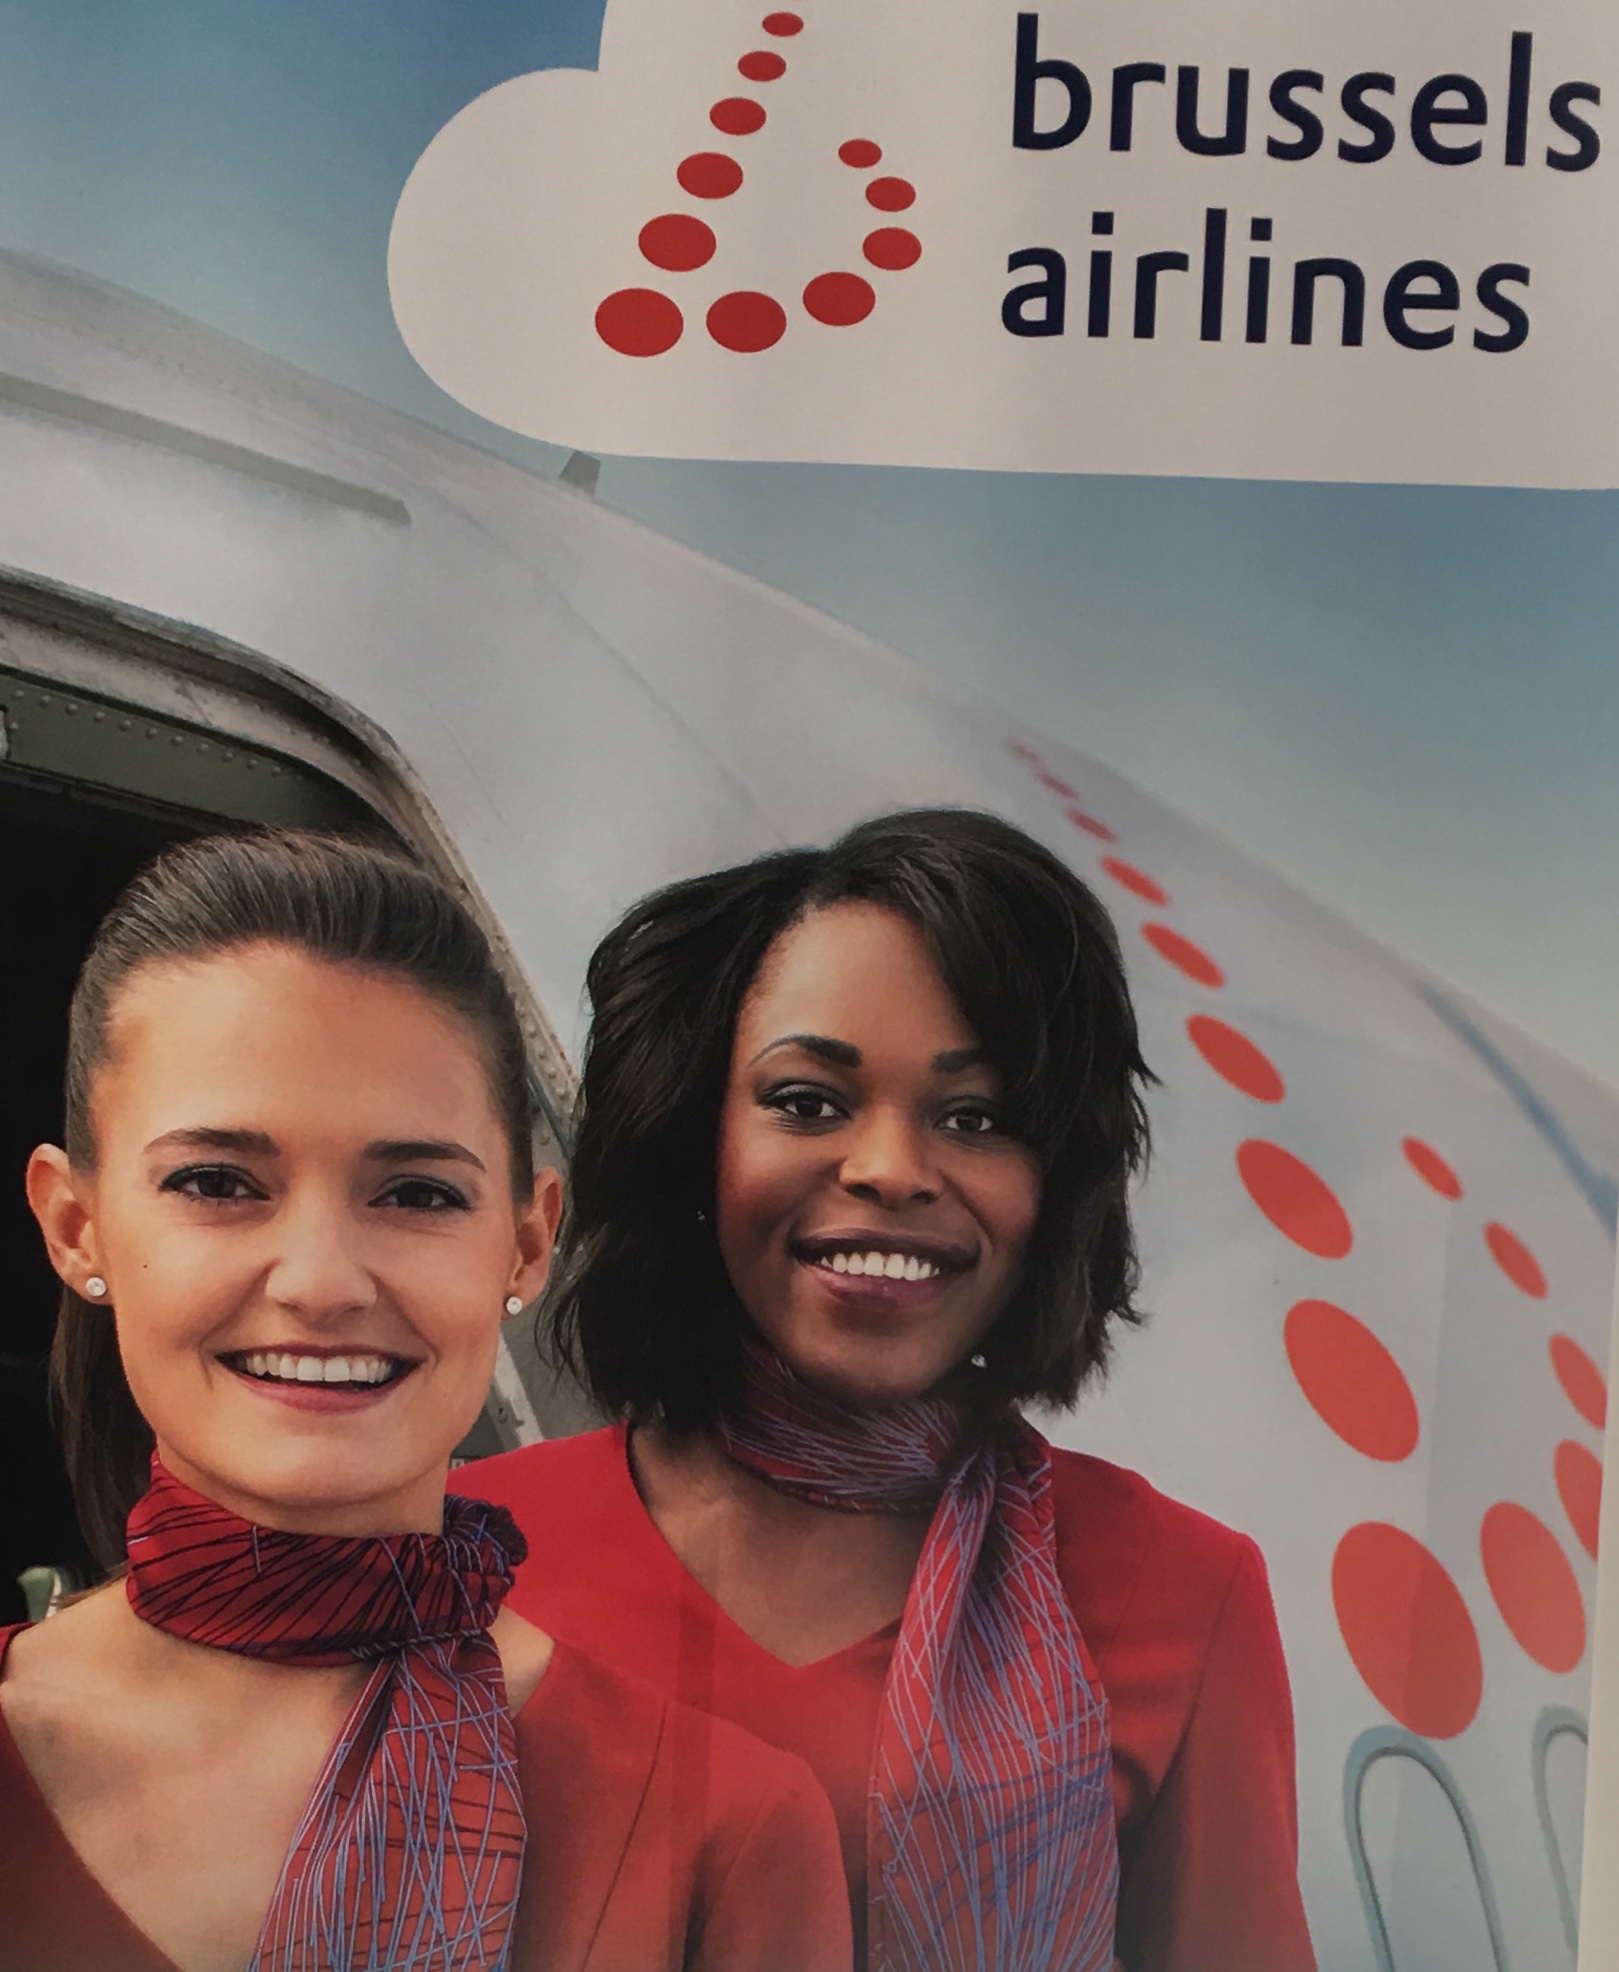 Deux agents de bord de Brussels Airlines debout devant une pancarte invitant les voyageurs à découvrir l'Afrique de l'Ouest.